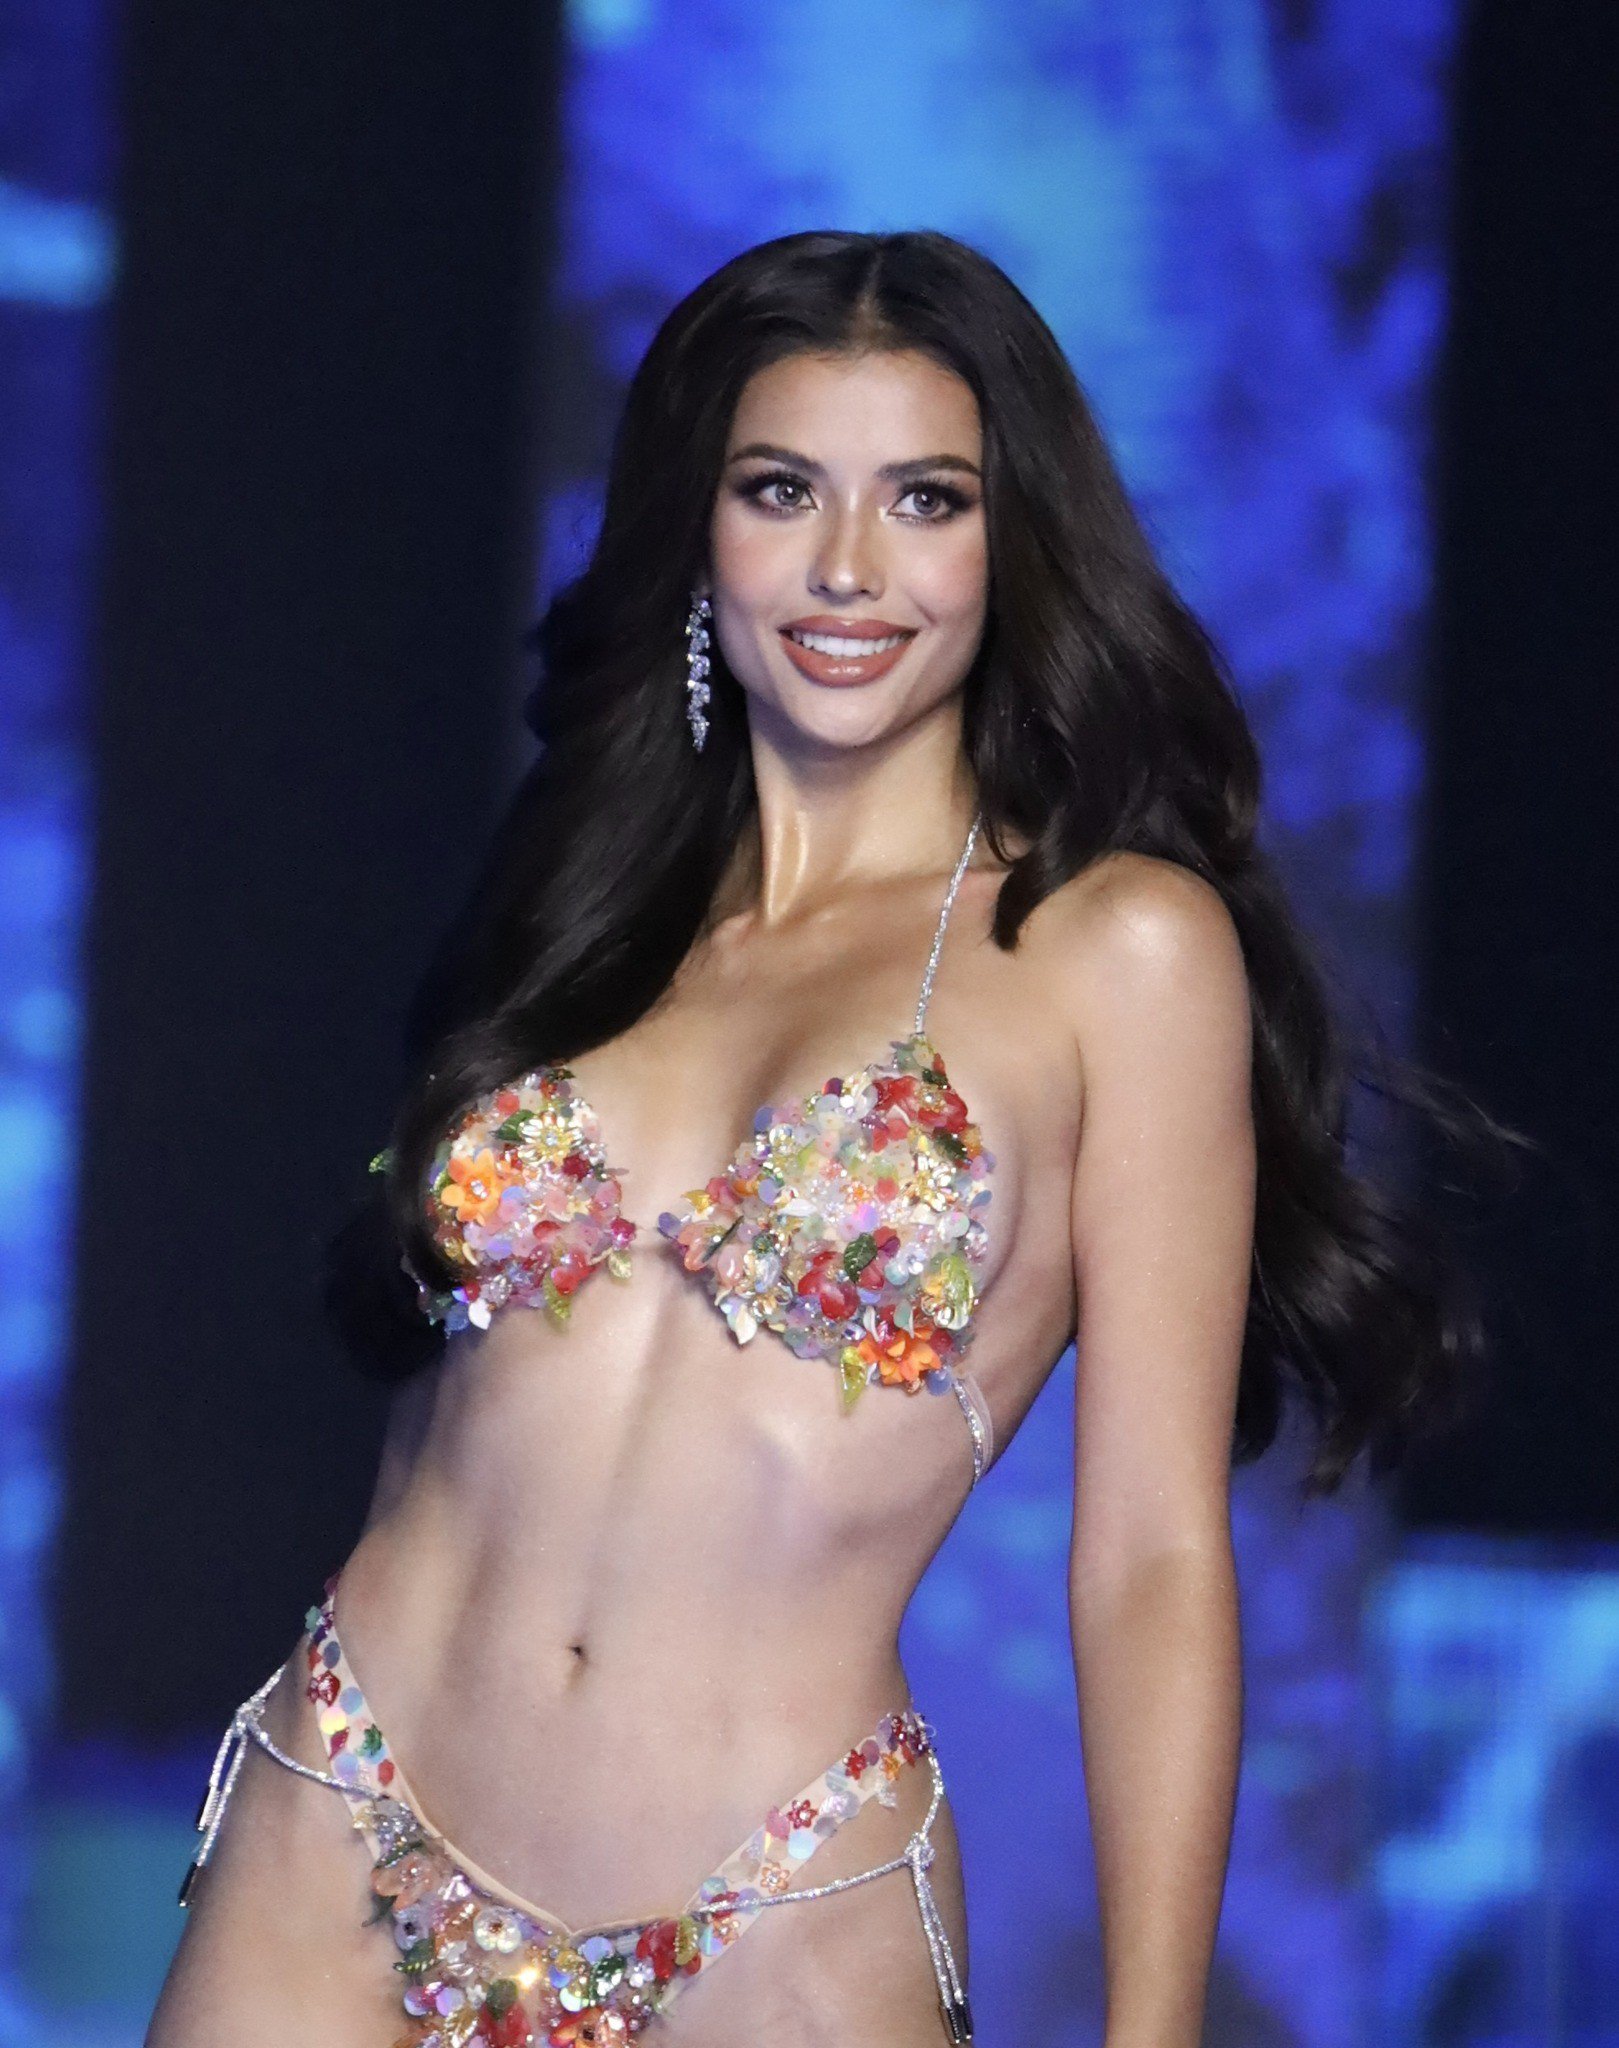 Bikini táo bạo trong đêm chung kết Hoa hậu Hoàn vũ Thái Lan 2023 - 1